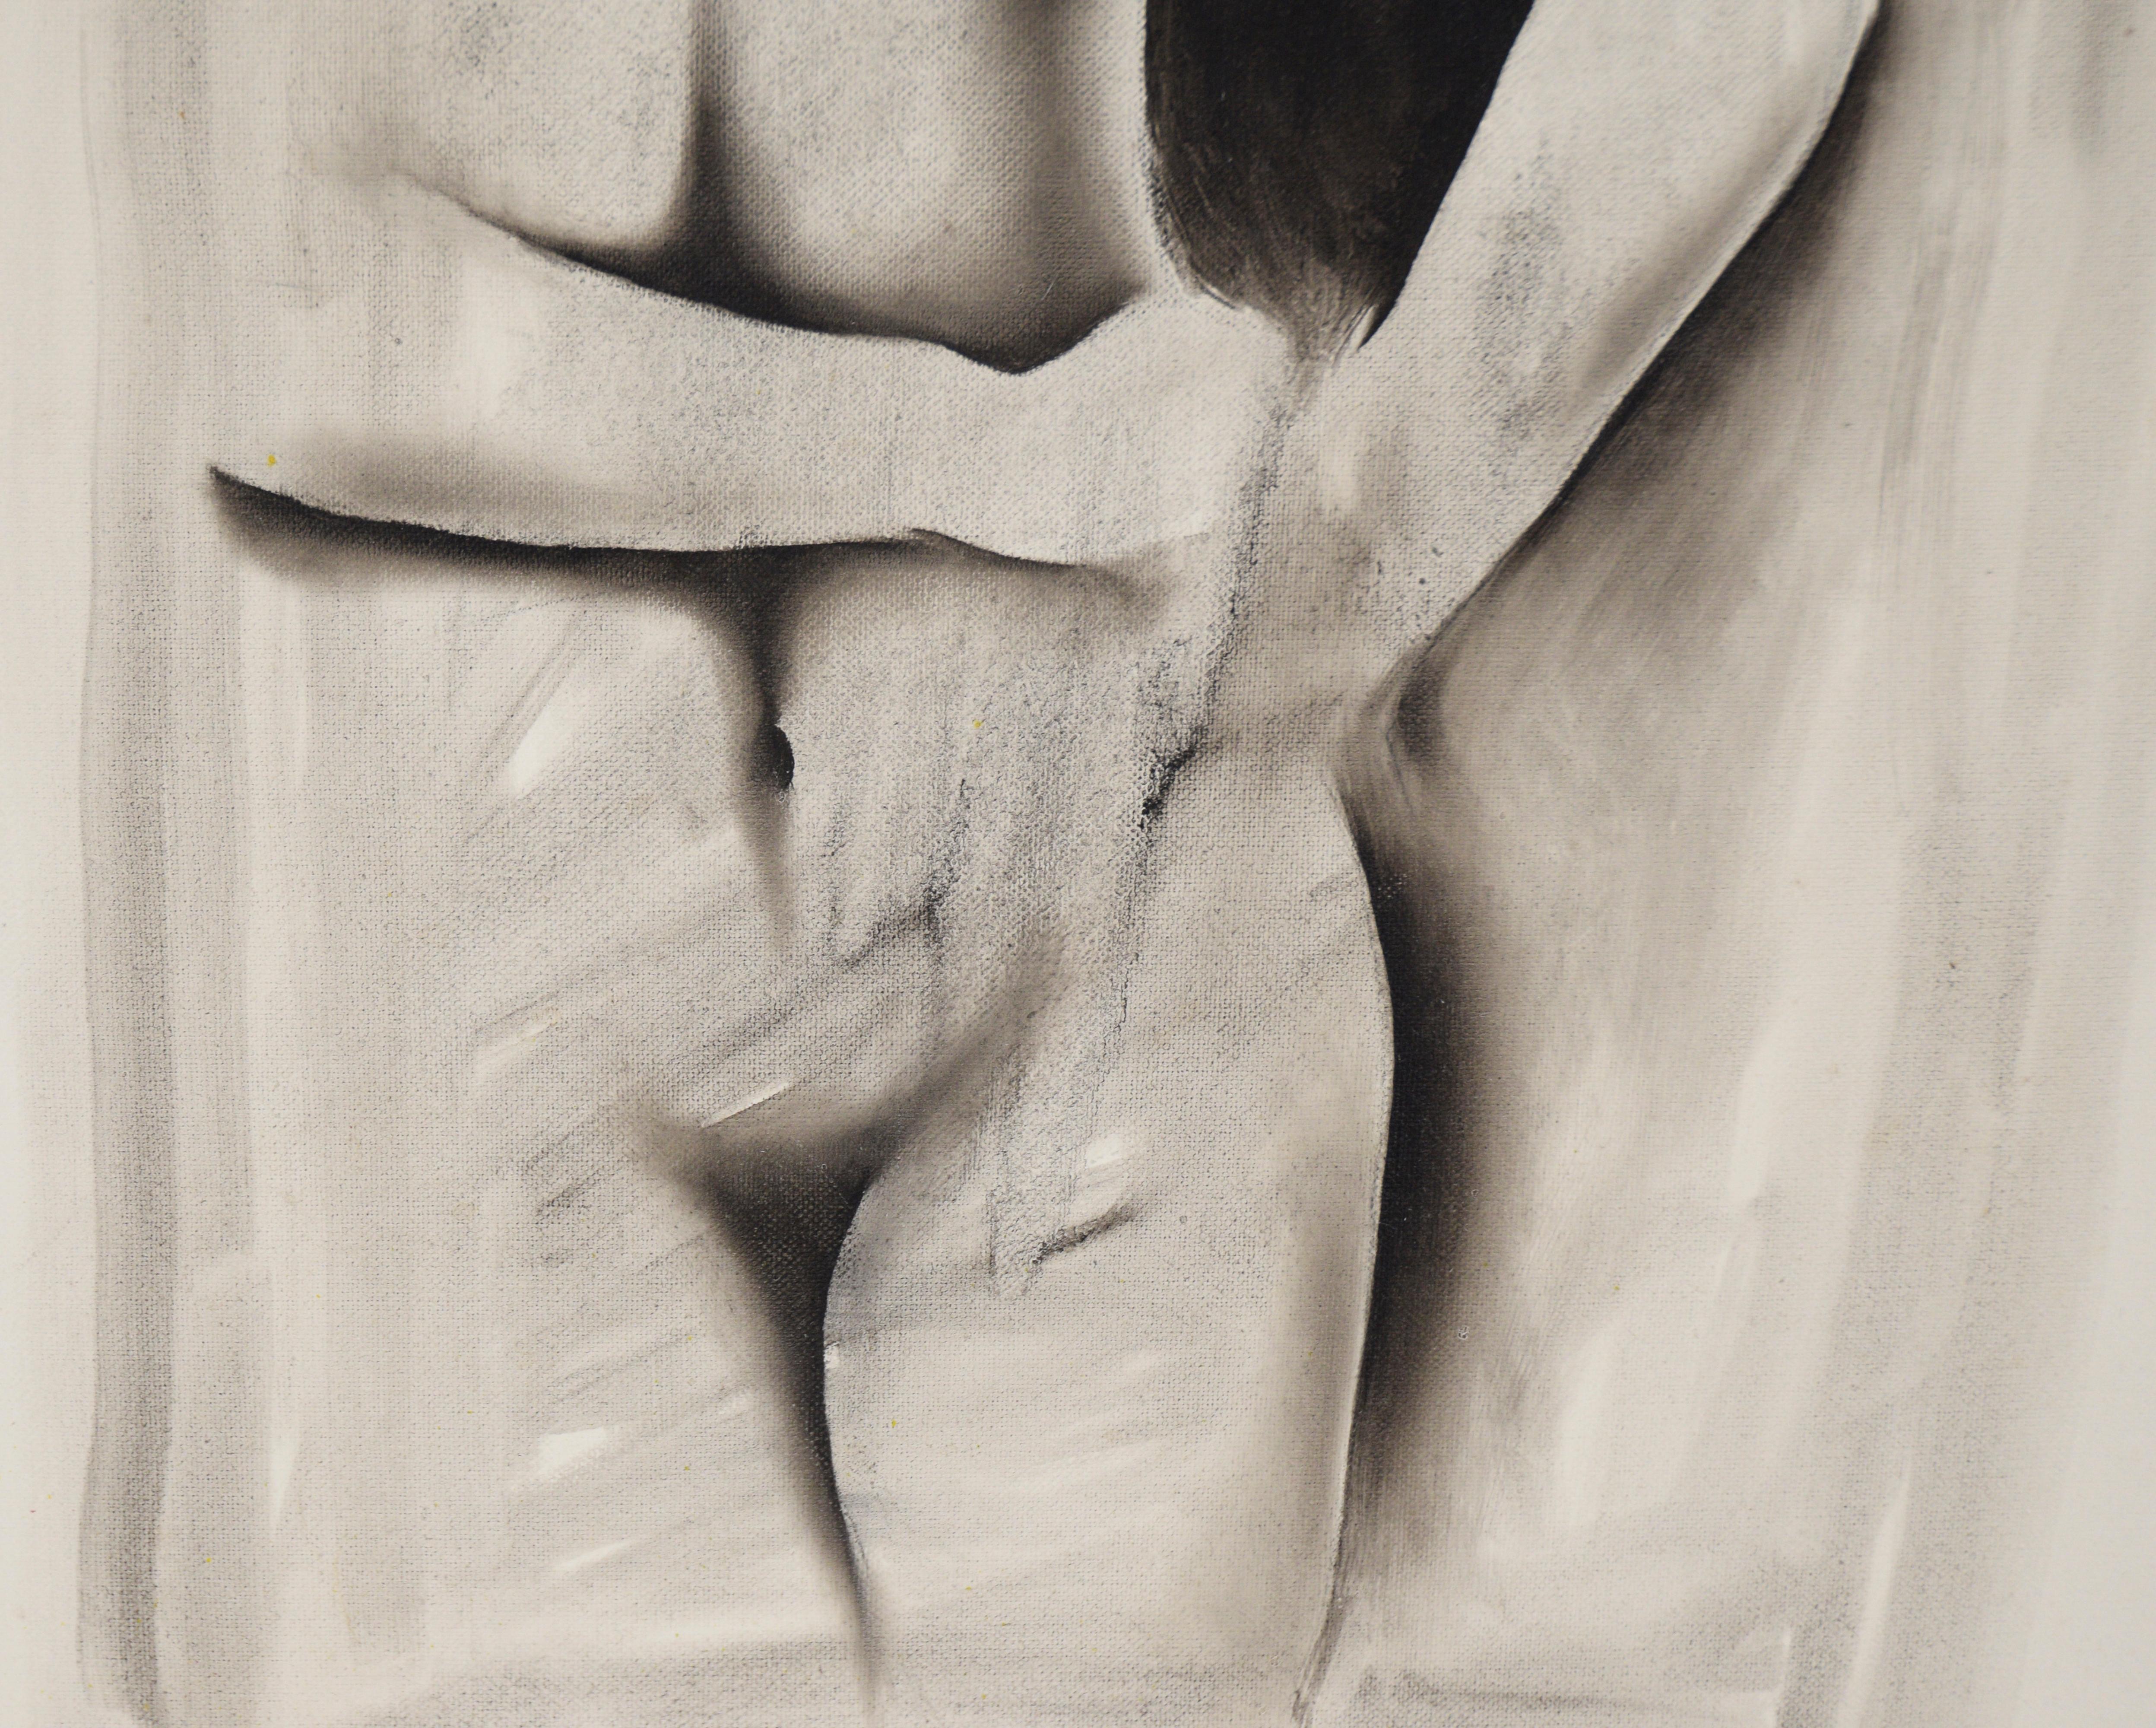 Schwarzer und weißer figurativer Akt – Öl auf Leinwand

Schwarzer und weißer figurativer Akt von F. Vasquez (20. Jahrhundert). Der nackte Torso einer Frau nimmt die Leinwand ein. Ihre rechte Hand liegt auf ihrer Hüfte, während ihre linke Hand